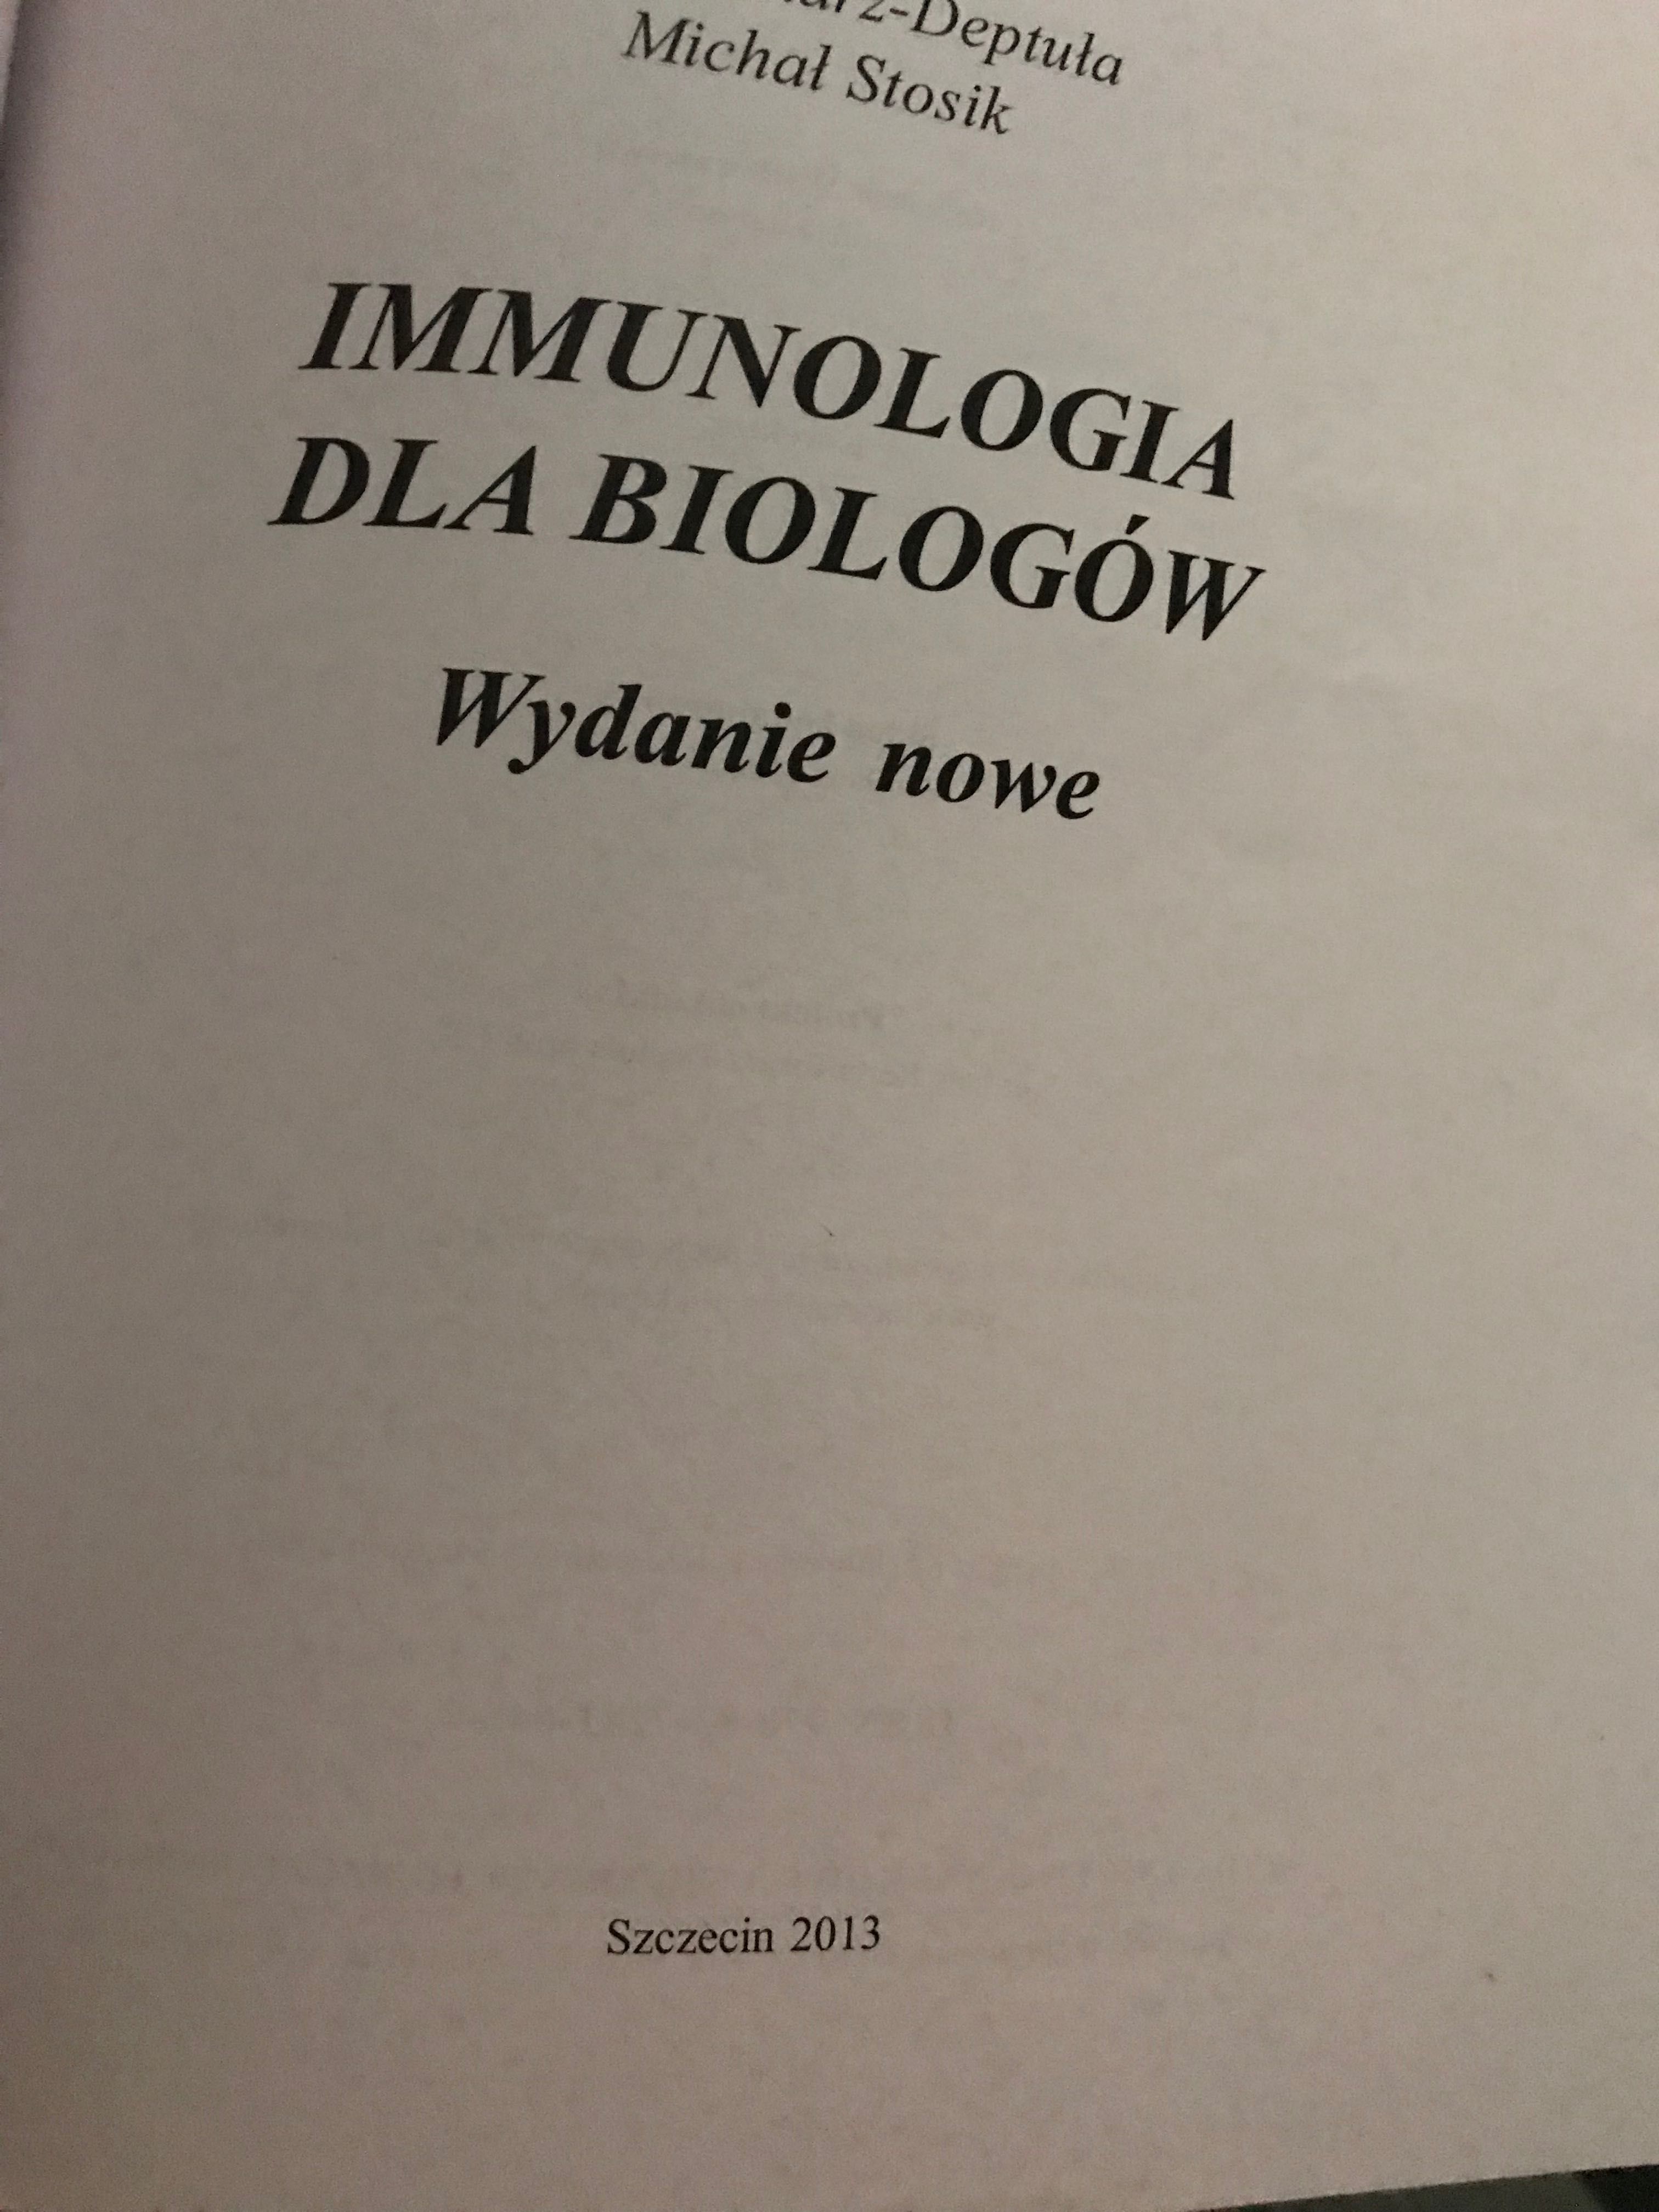 Immunologia dla biologów